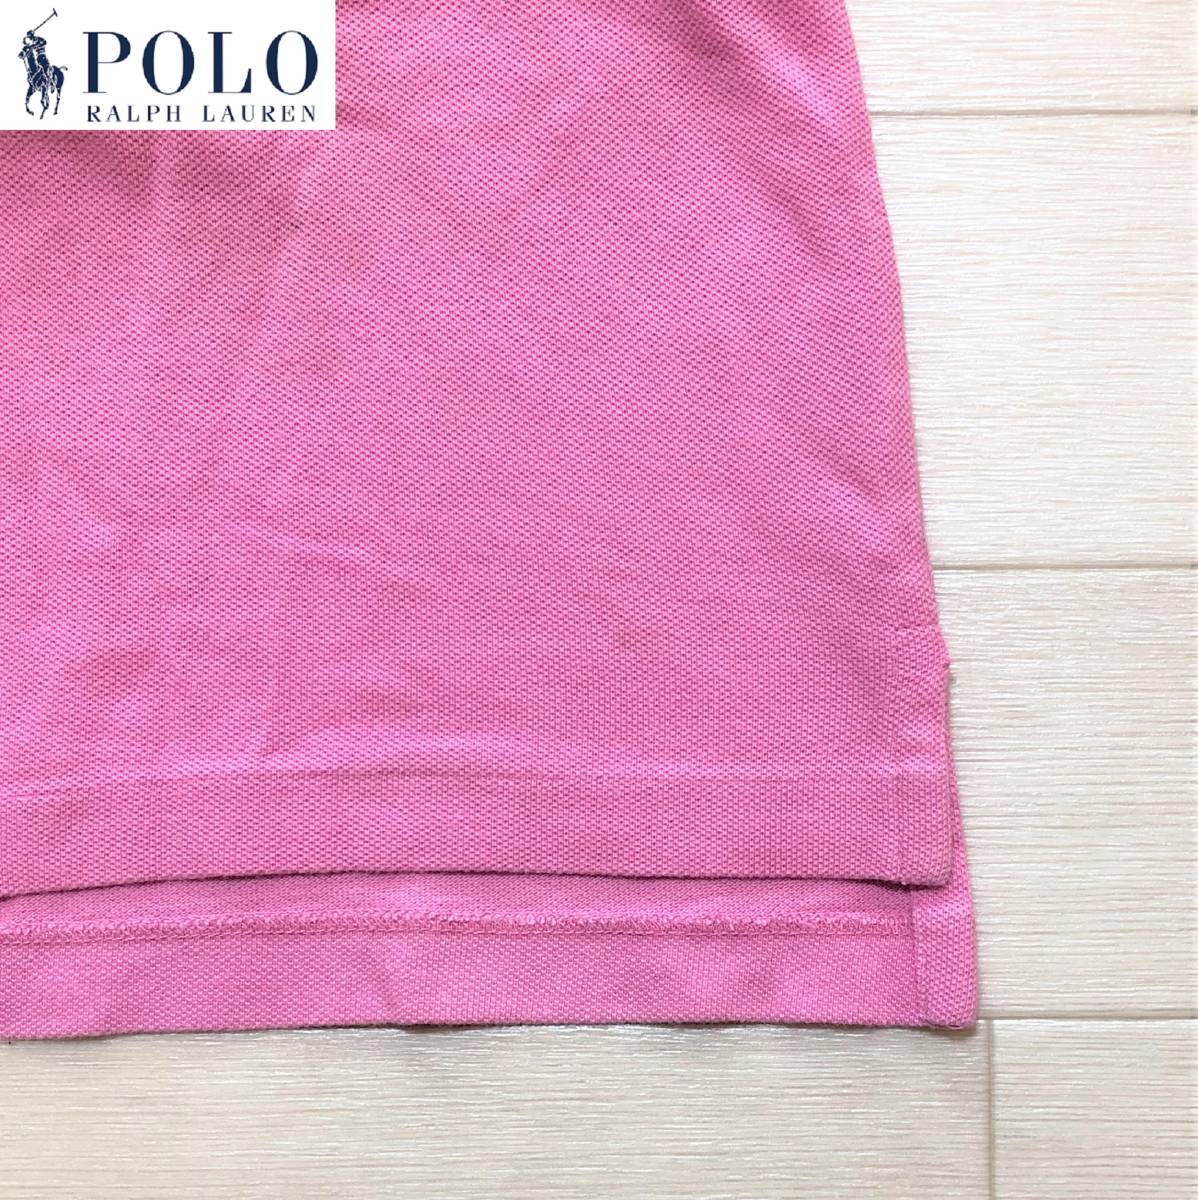 POLO RALPH LAUREN ポロ・ラルフローレン ポロシャツ 半袖 無地 ワンポイント サイズ100 PINK ピンク 桃色